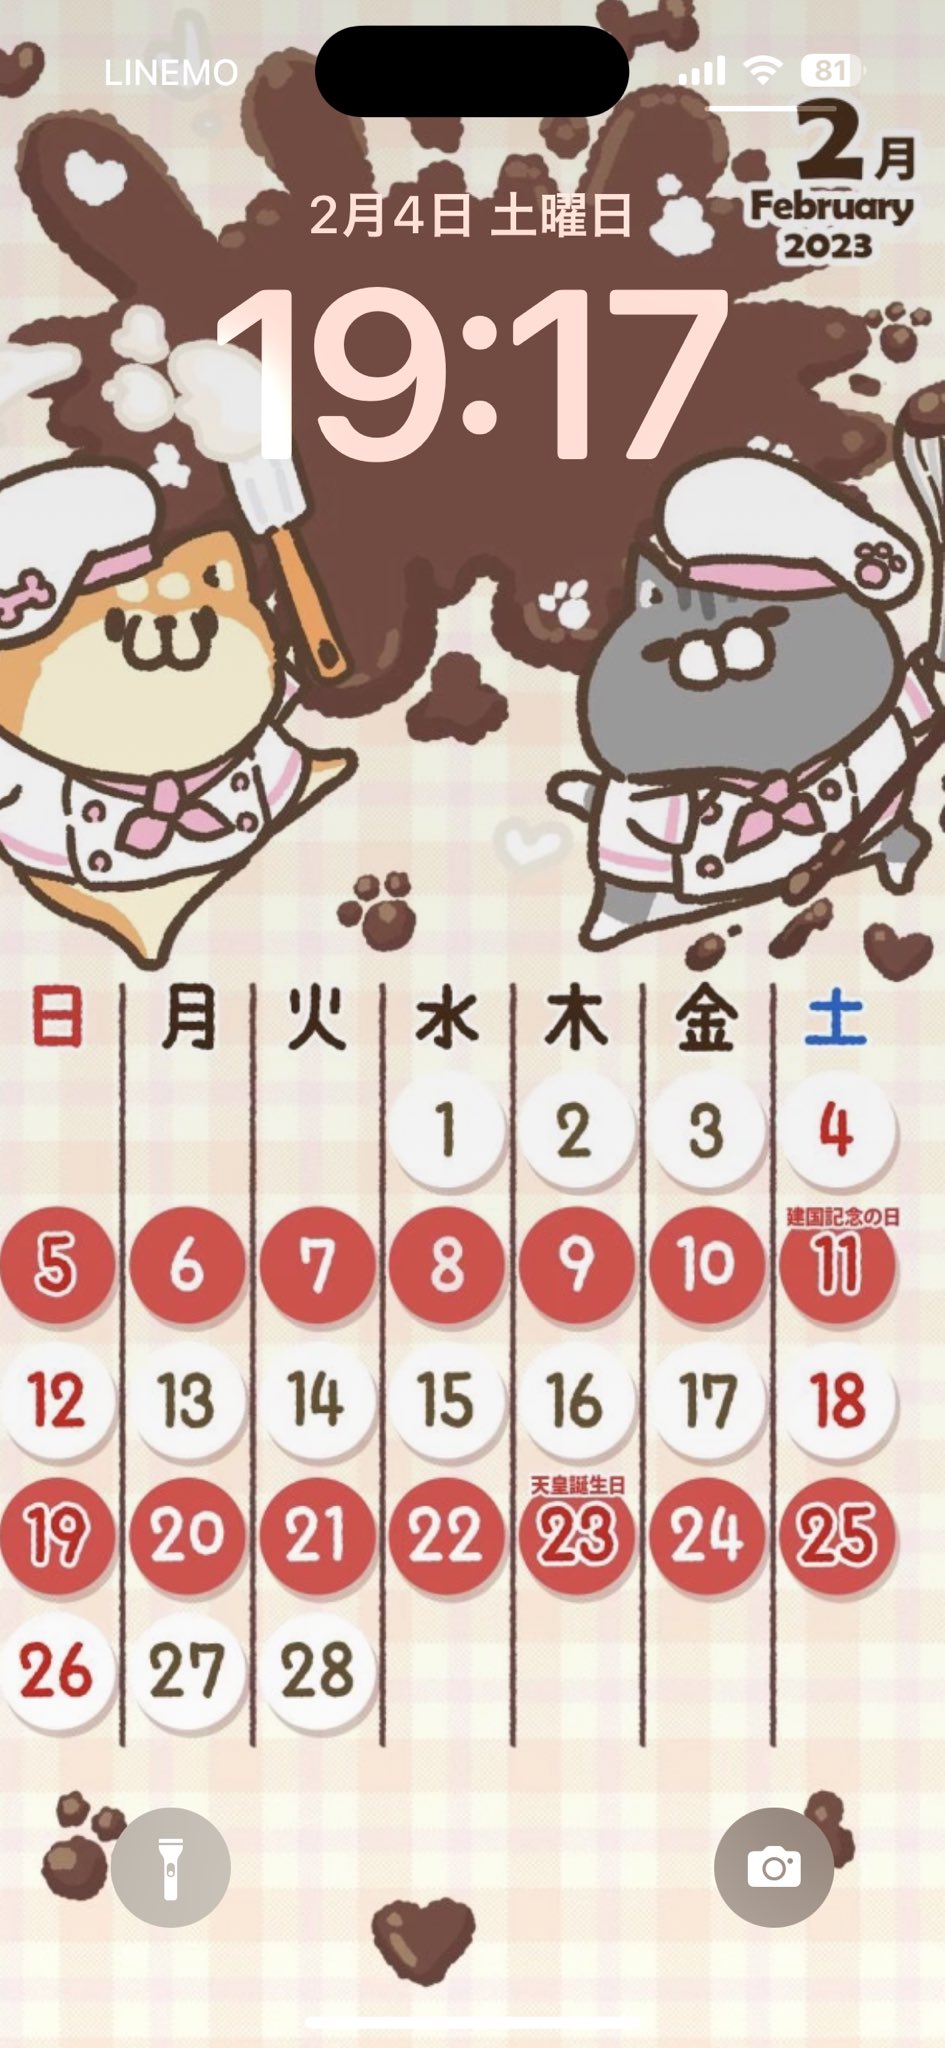 ボンレス犬猫さんのカレンダー、まちがえて1月の設定してた(；´∀｀) 2月のカレンダーをセットしなおし。 